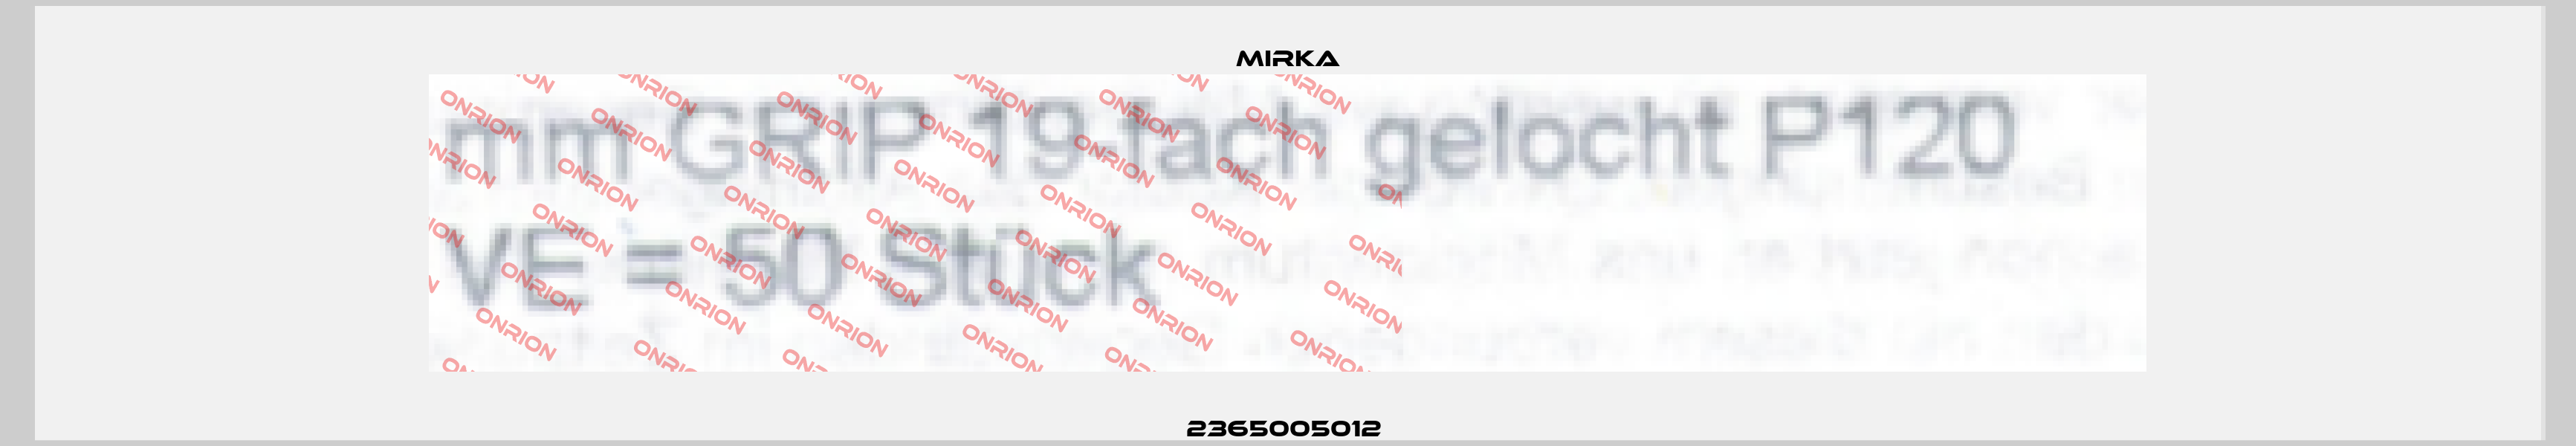 2365005012  Mirka